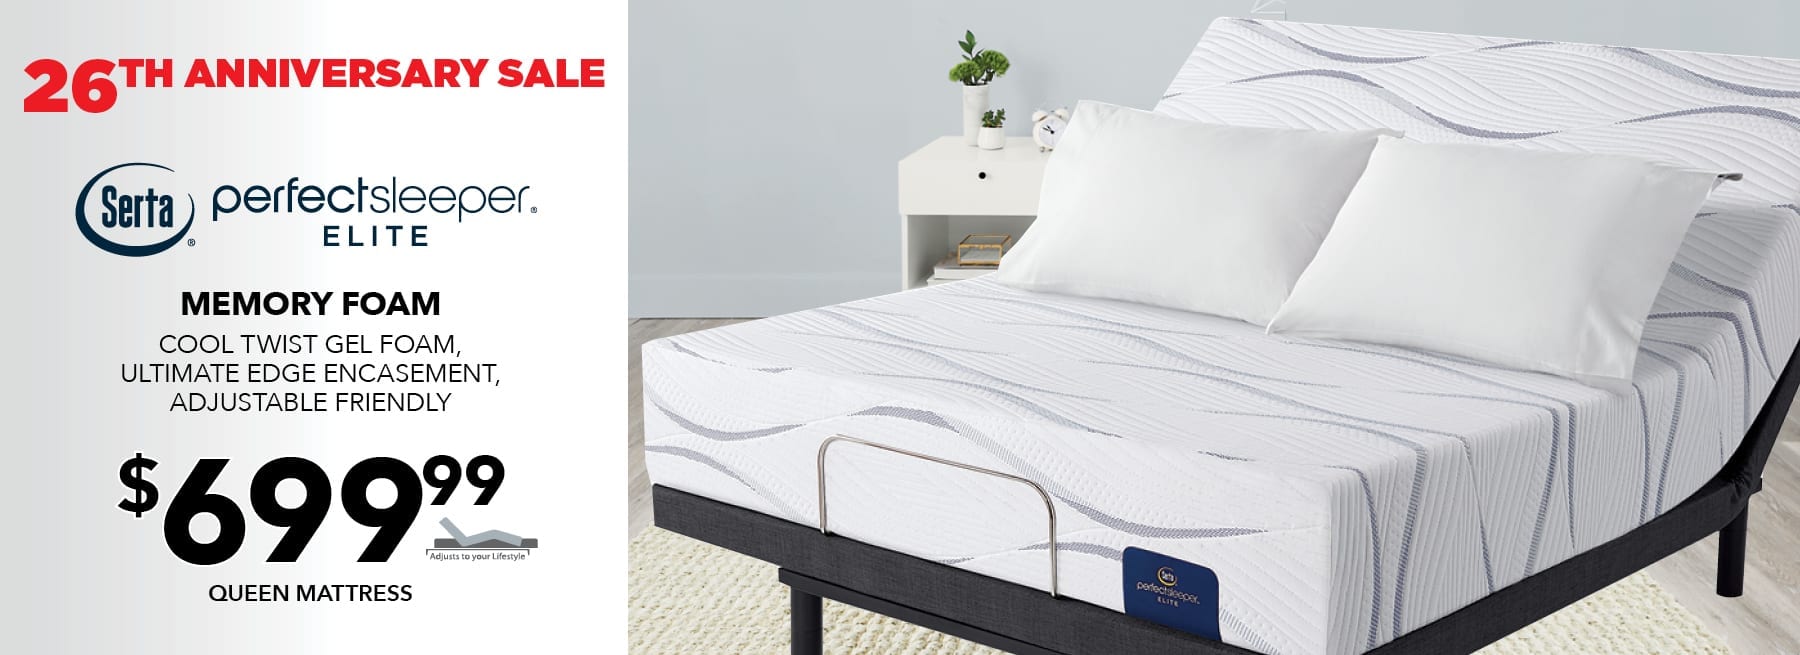 mattress firm clearance mesquite tx 75150